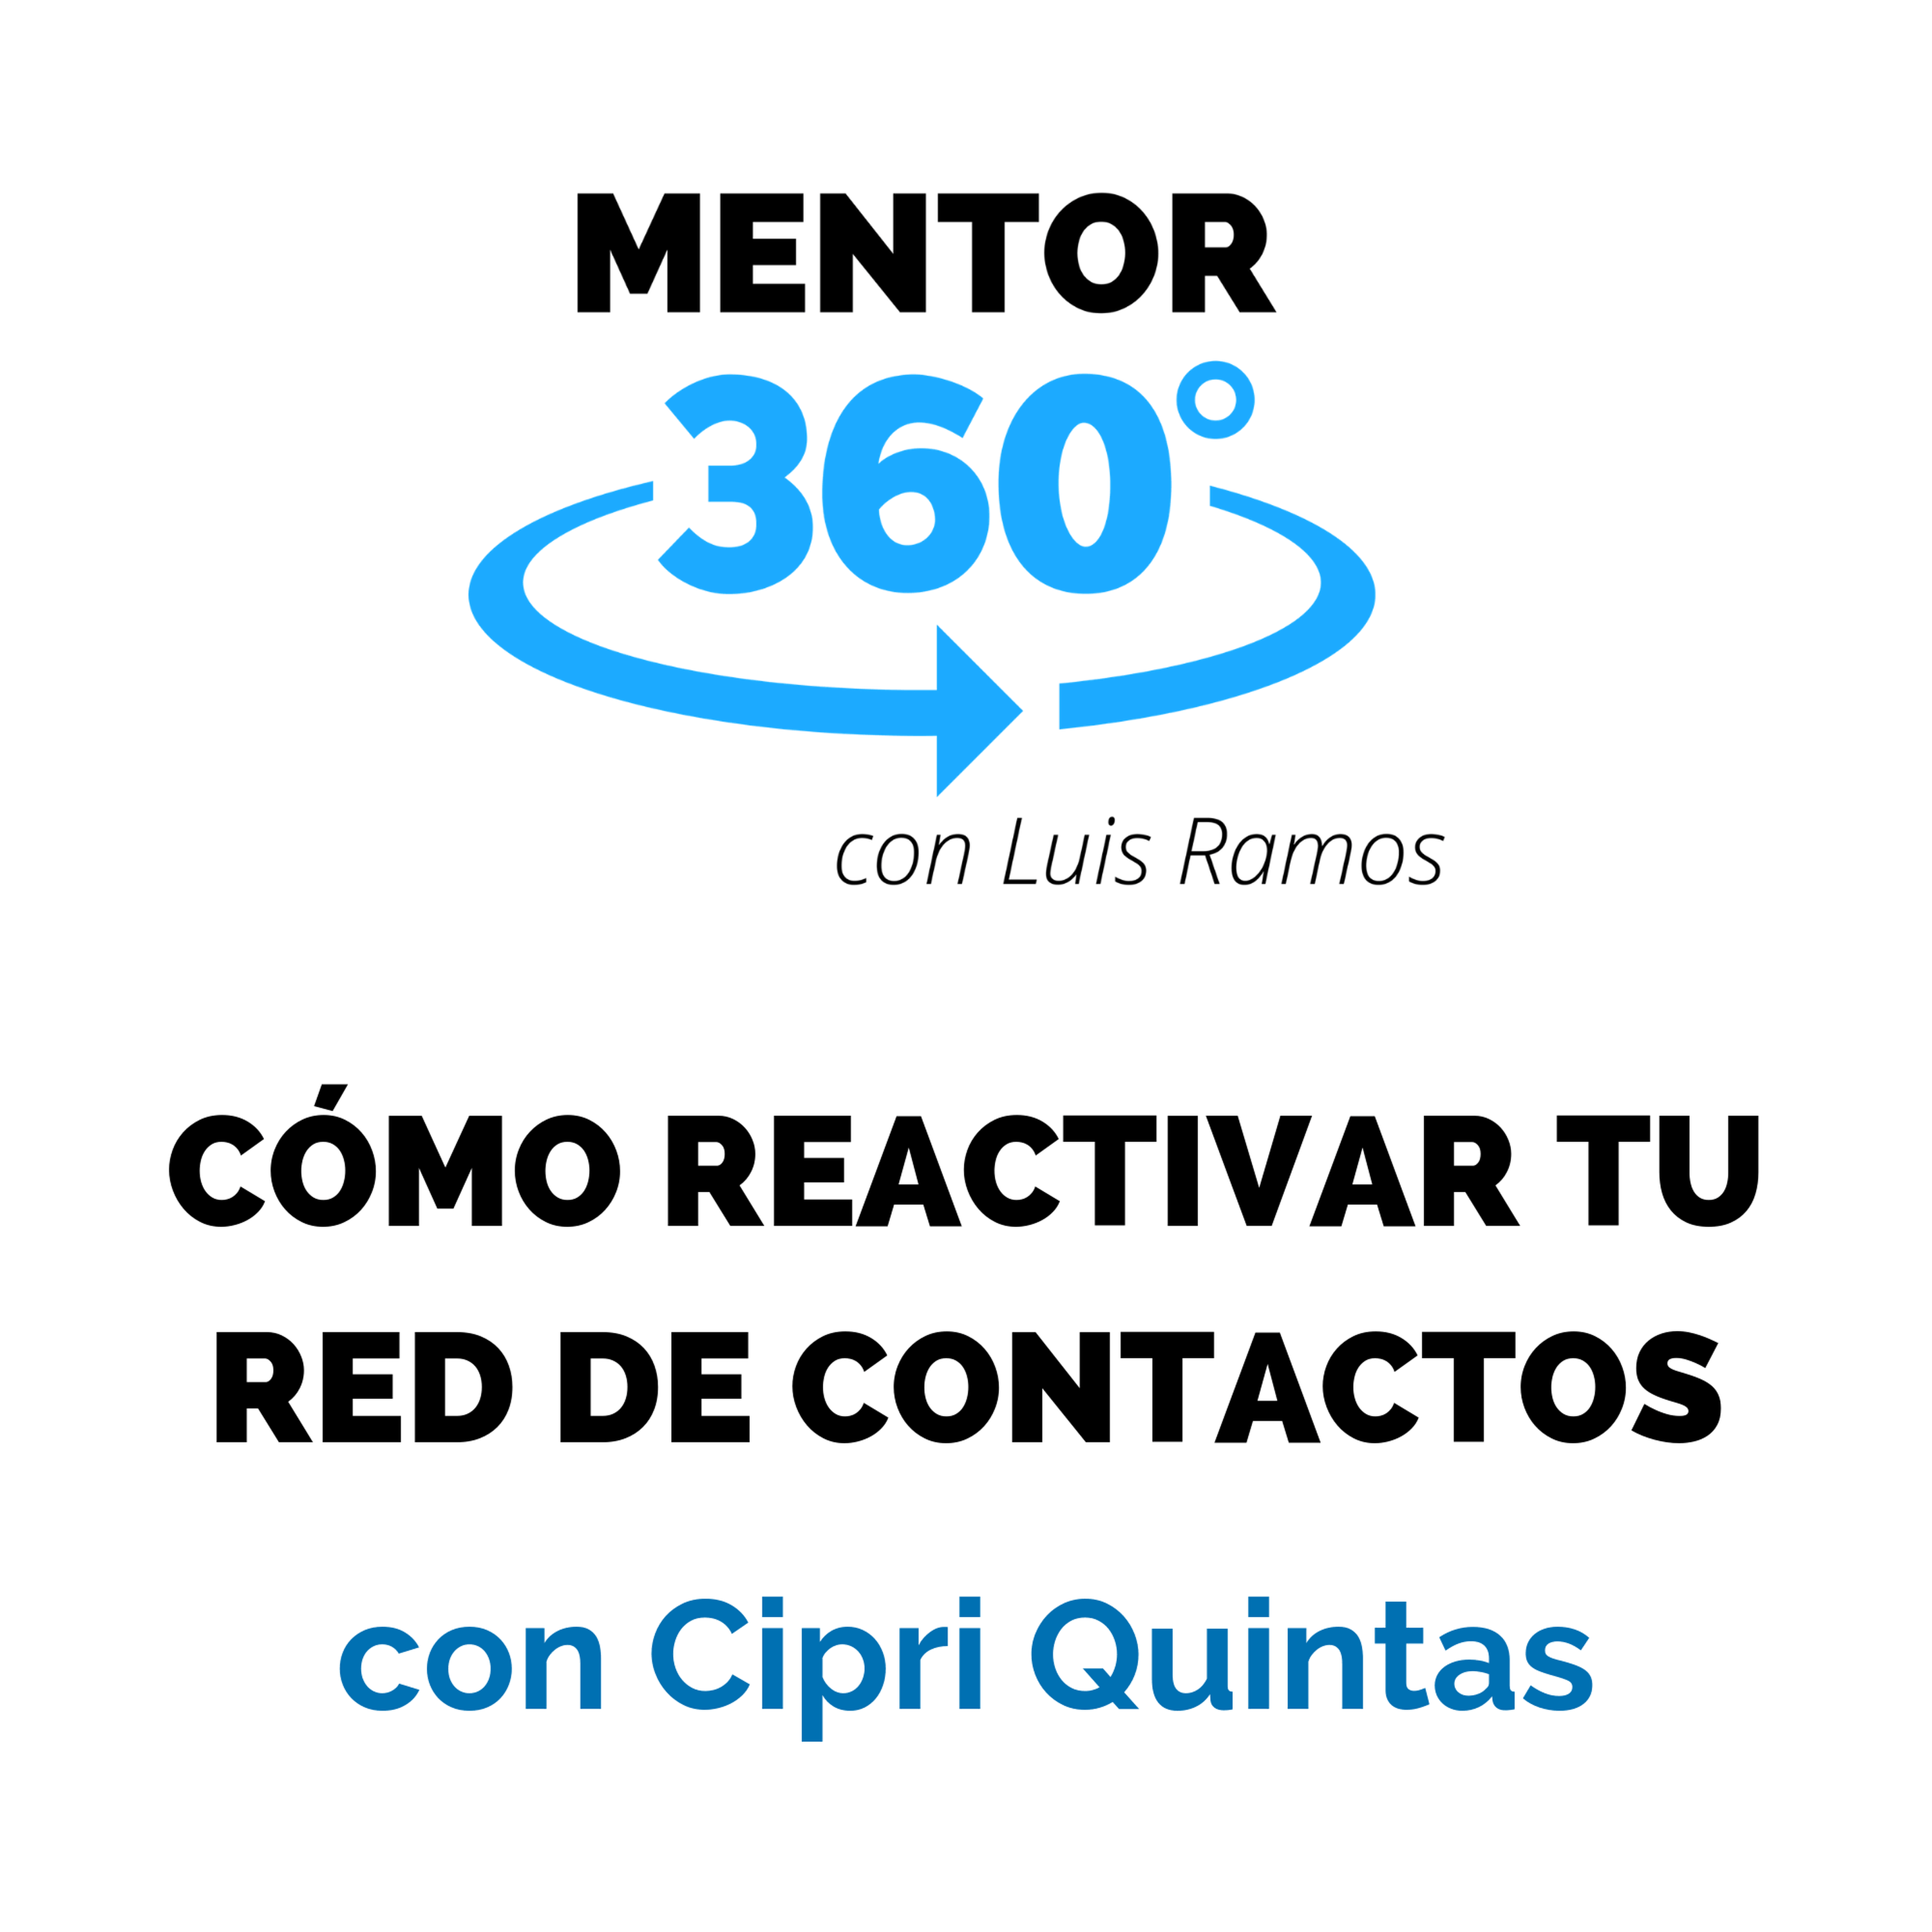 Cómo Reactivar Tu Red de Contactos, con Cipri Quintas - Networking - MENTOR360